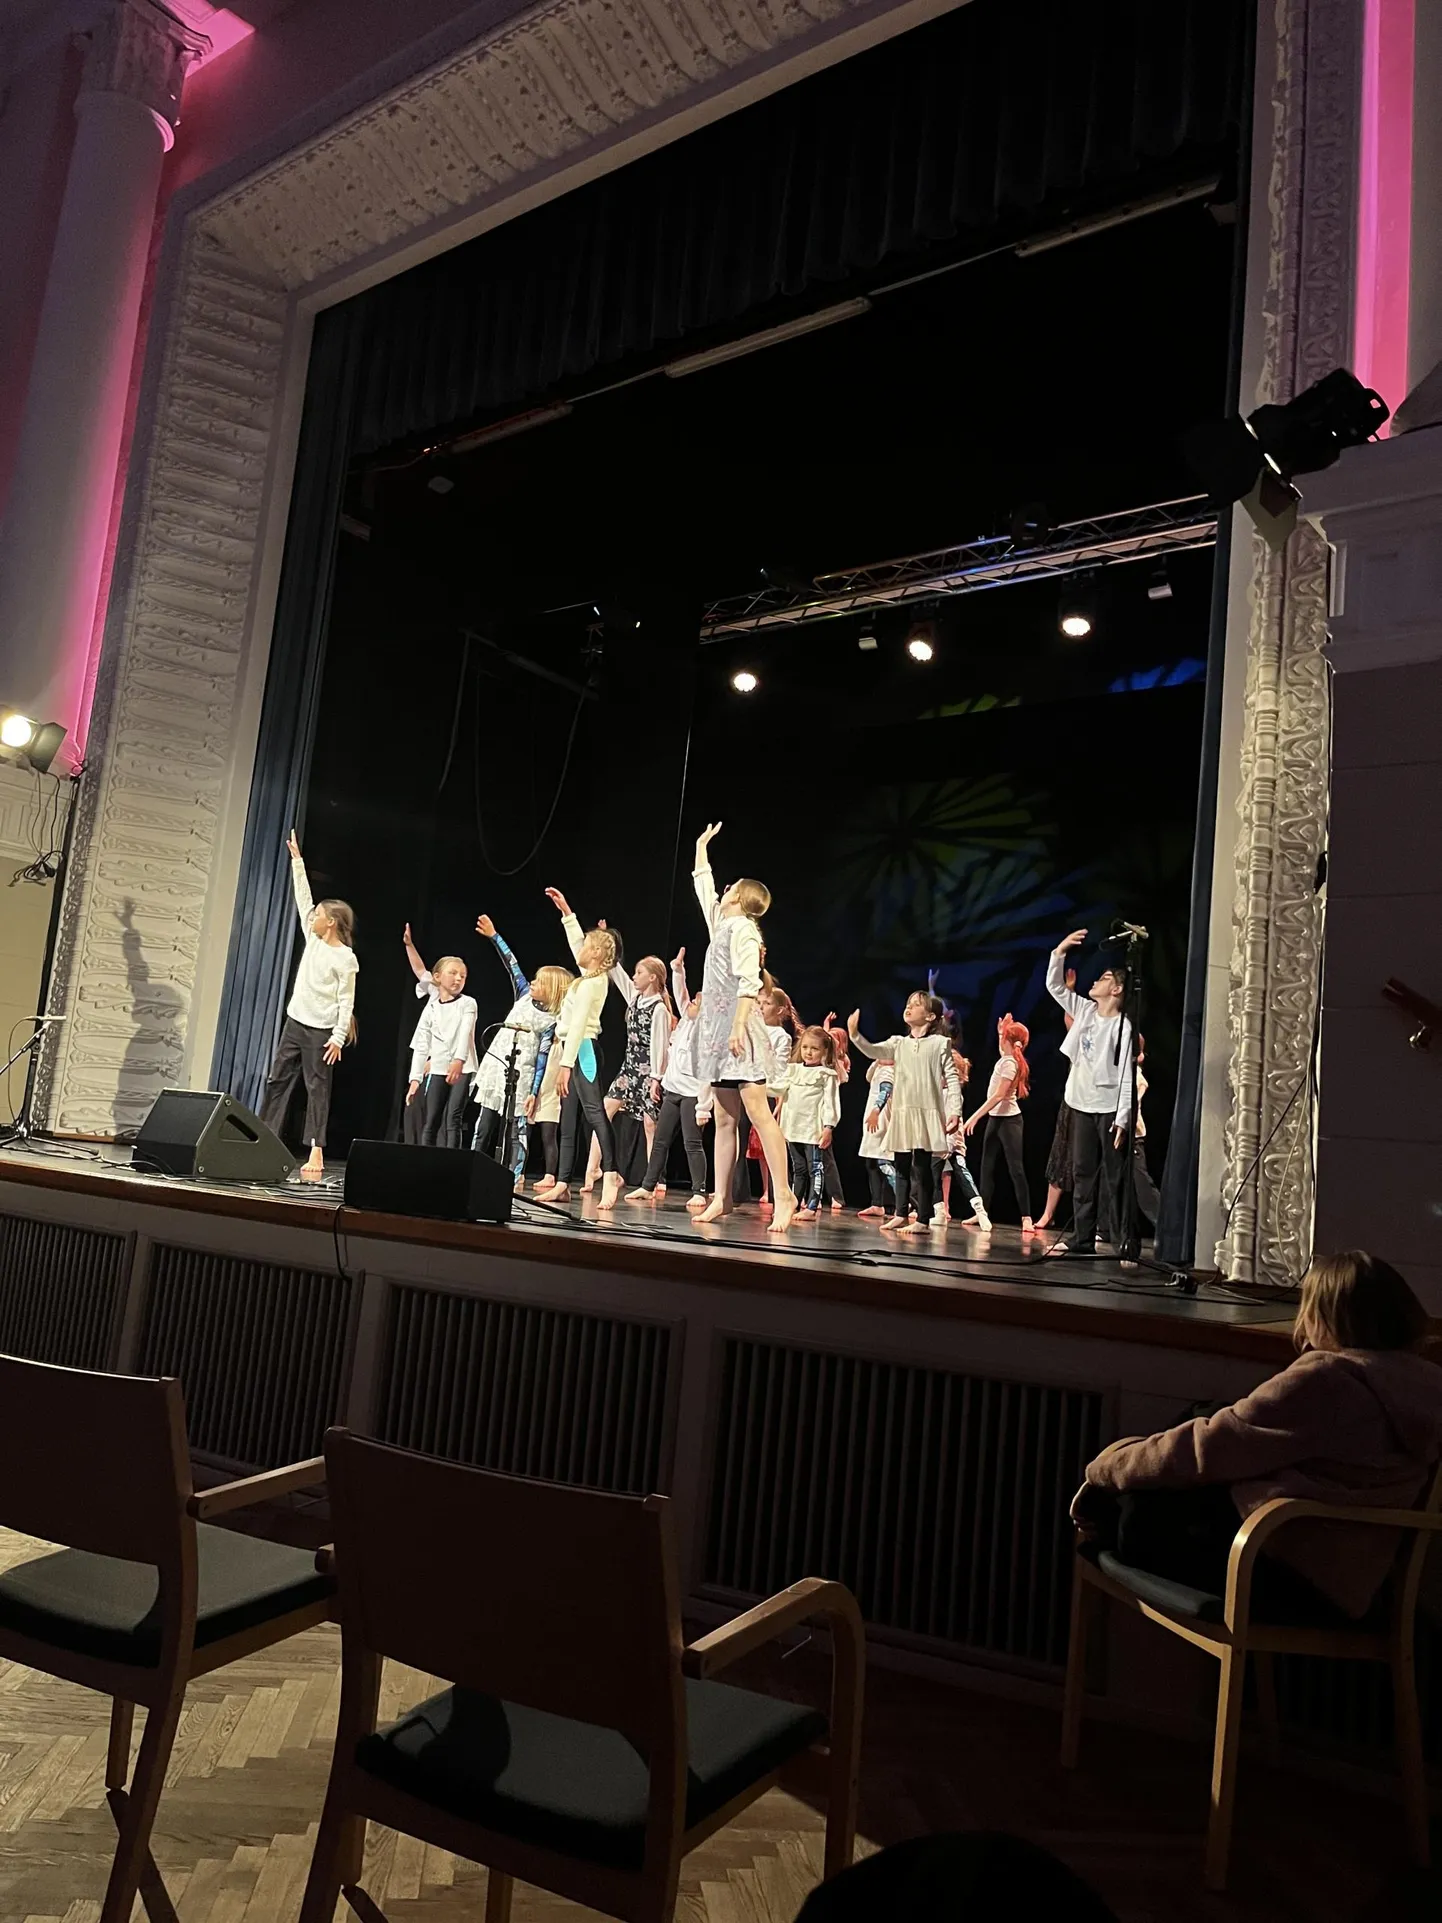 Laupäevaseks emadepäeva kontserdiks Sakala keskuses tegid lapsed usinasti proovi. Fotol on S-stuudio tantsijad.